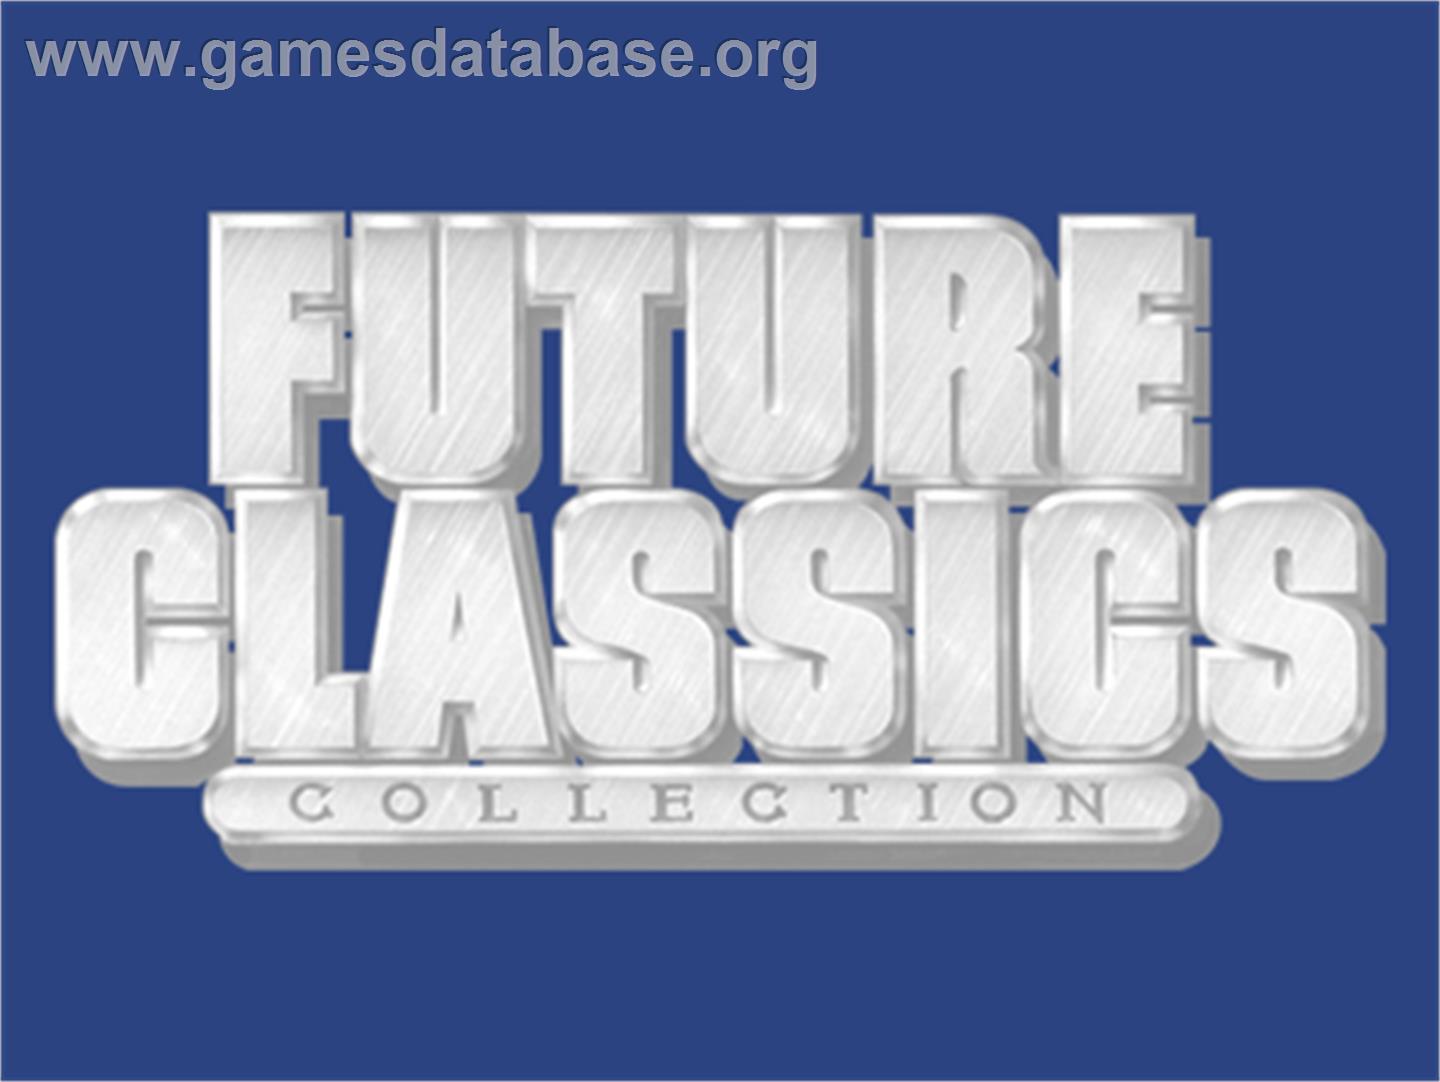 Future Classics Collection - Commodore Amiga - Artwork - Cartridge Top